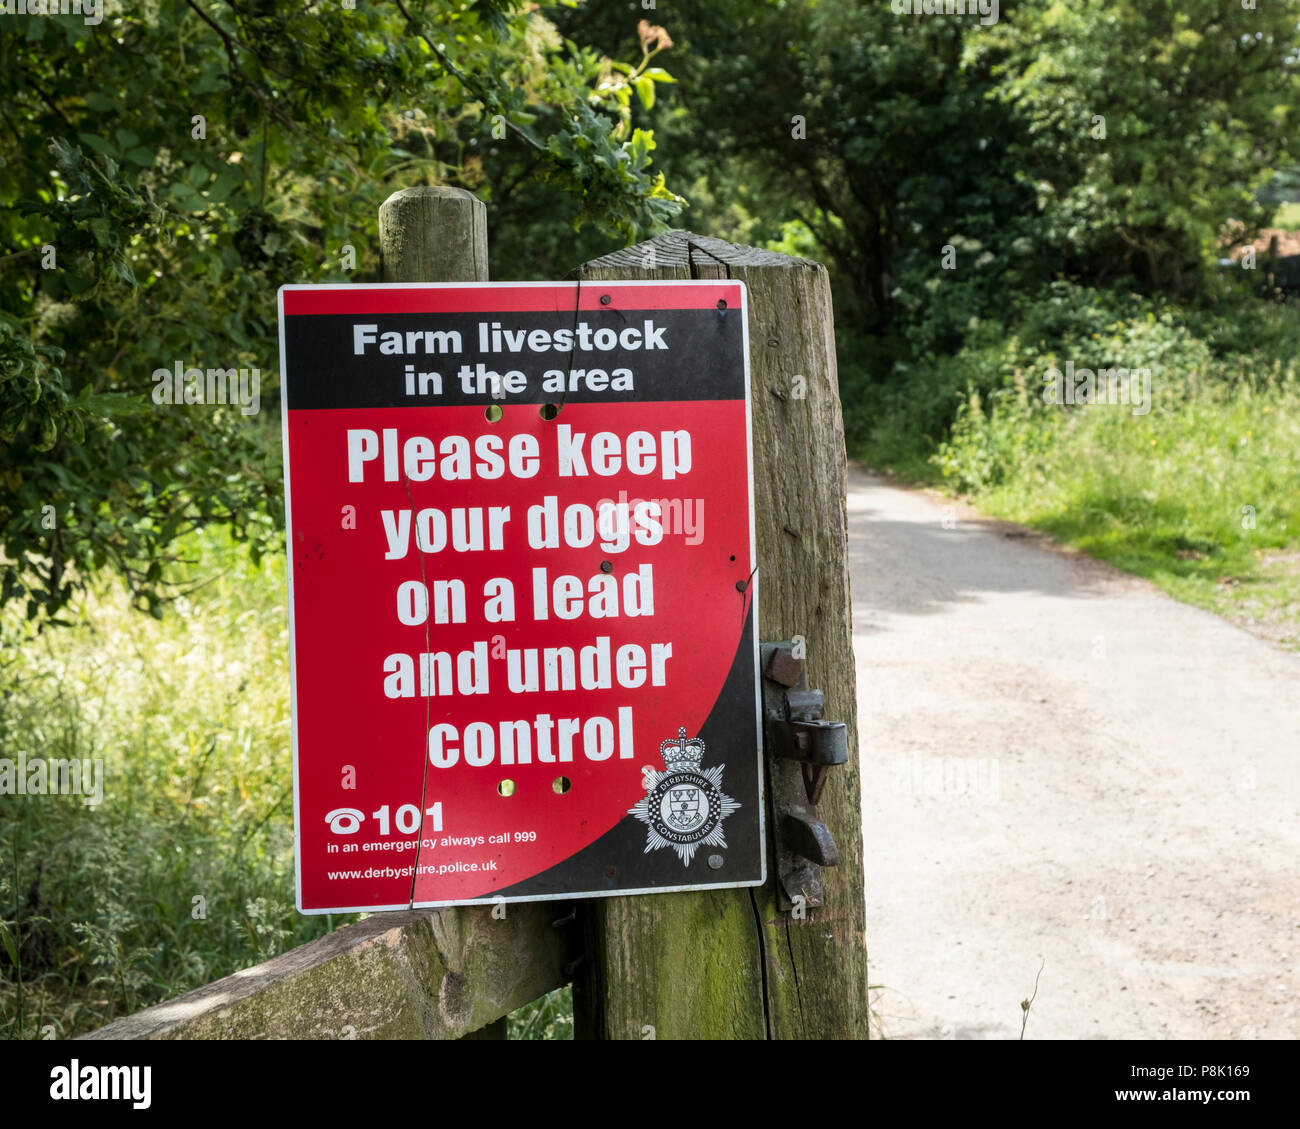 Bauernhof Tiere anmelden. Beachten Sie Menschen, die sich zu 'Bitte geben Sie Ihre Hunde an der Leine und unter Kontrolle zu halten', Derbyshire, England, Großbritannien Stockfoto